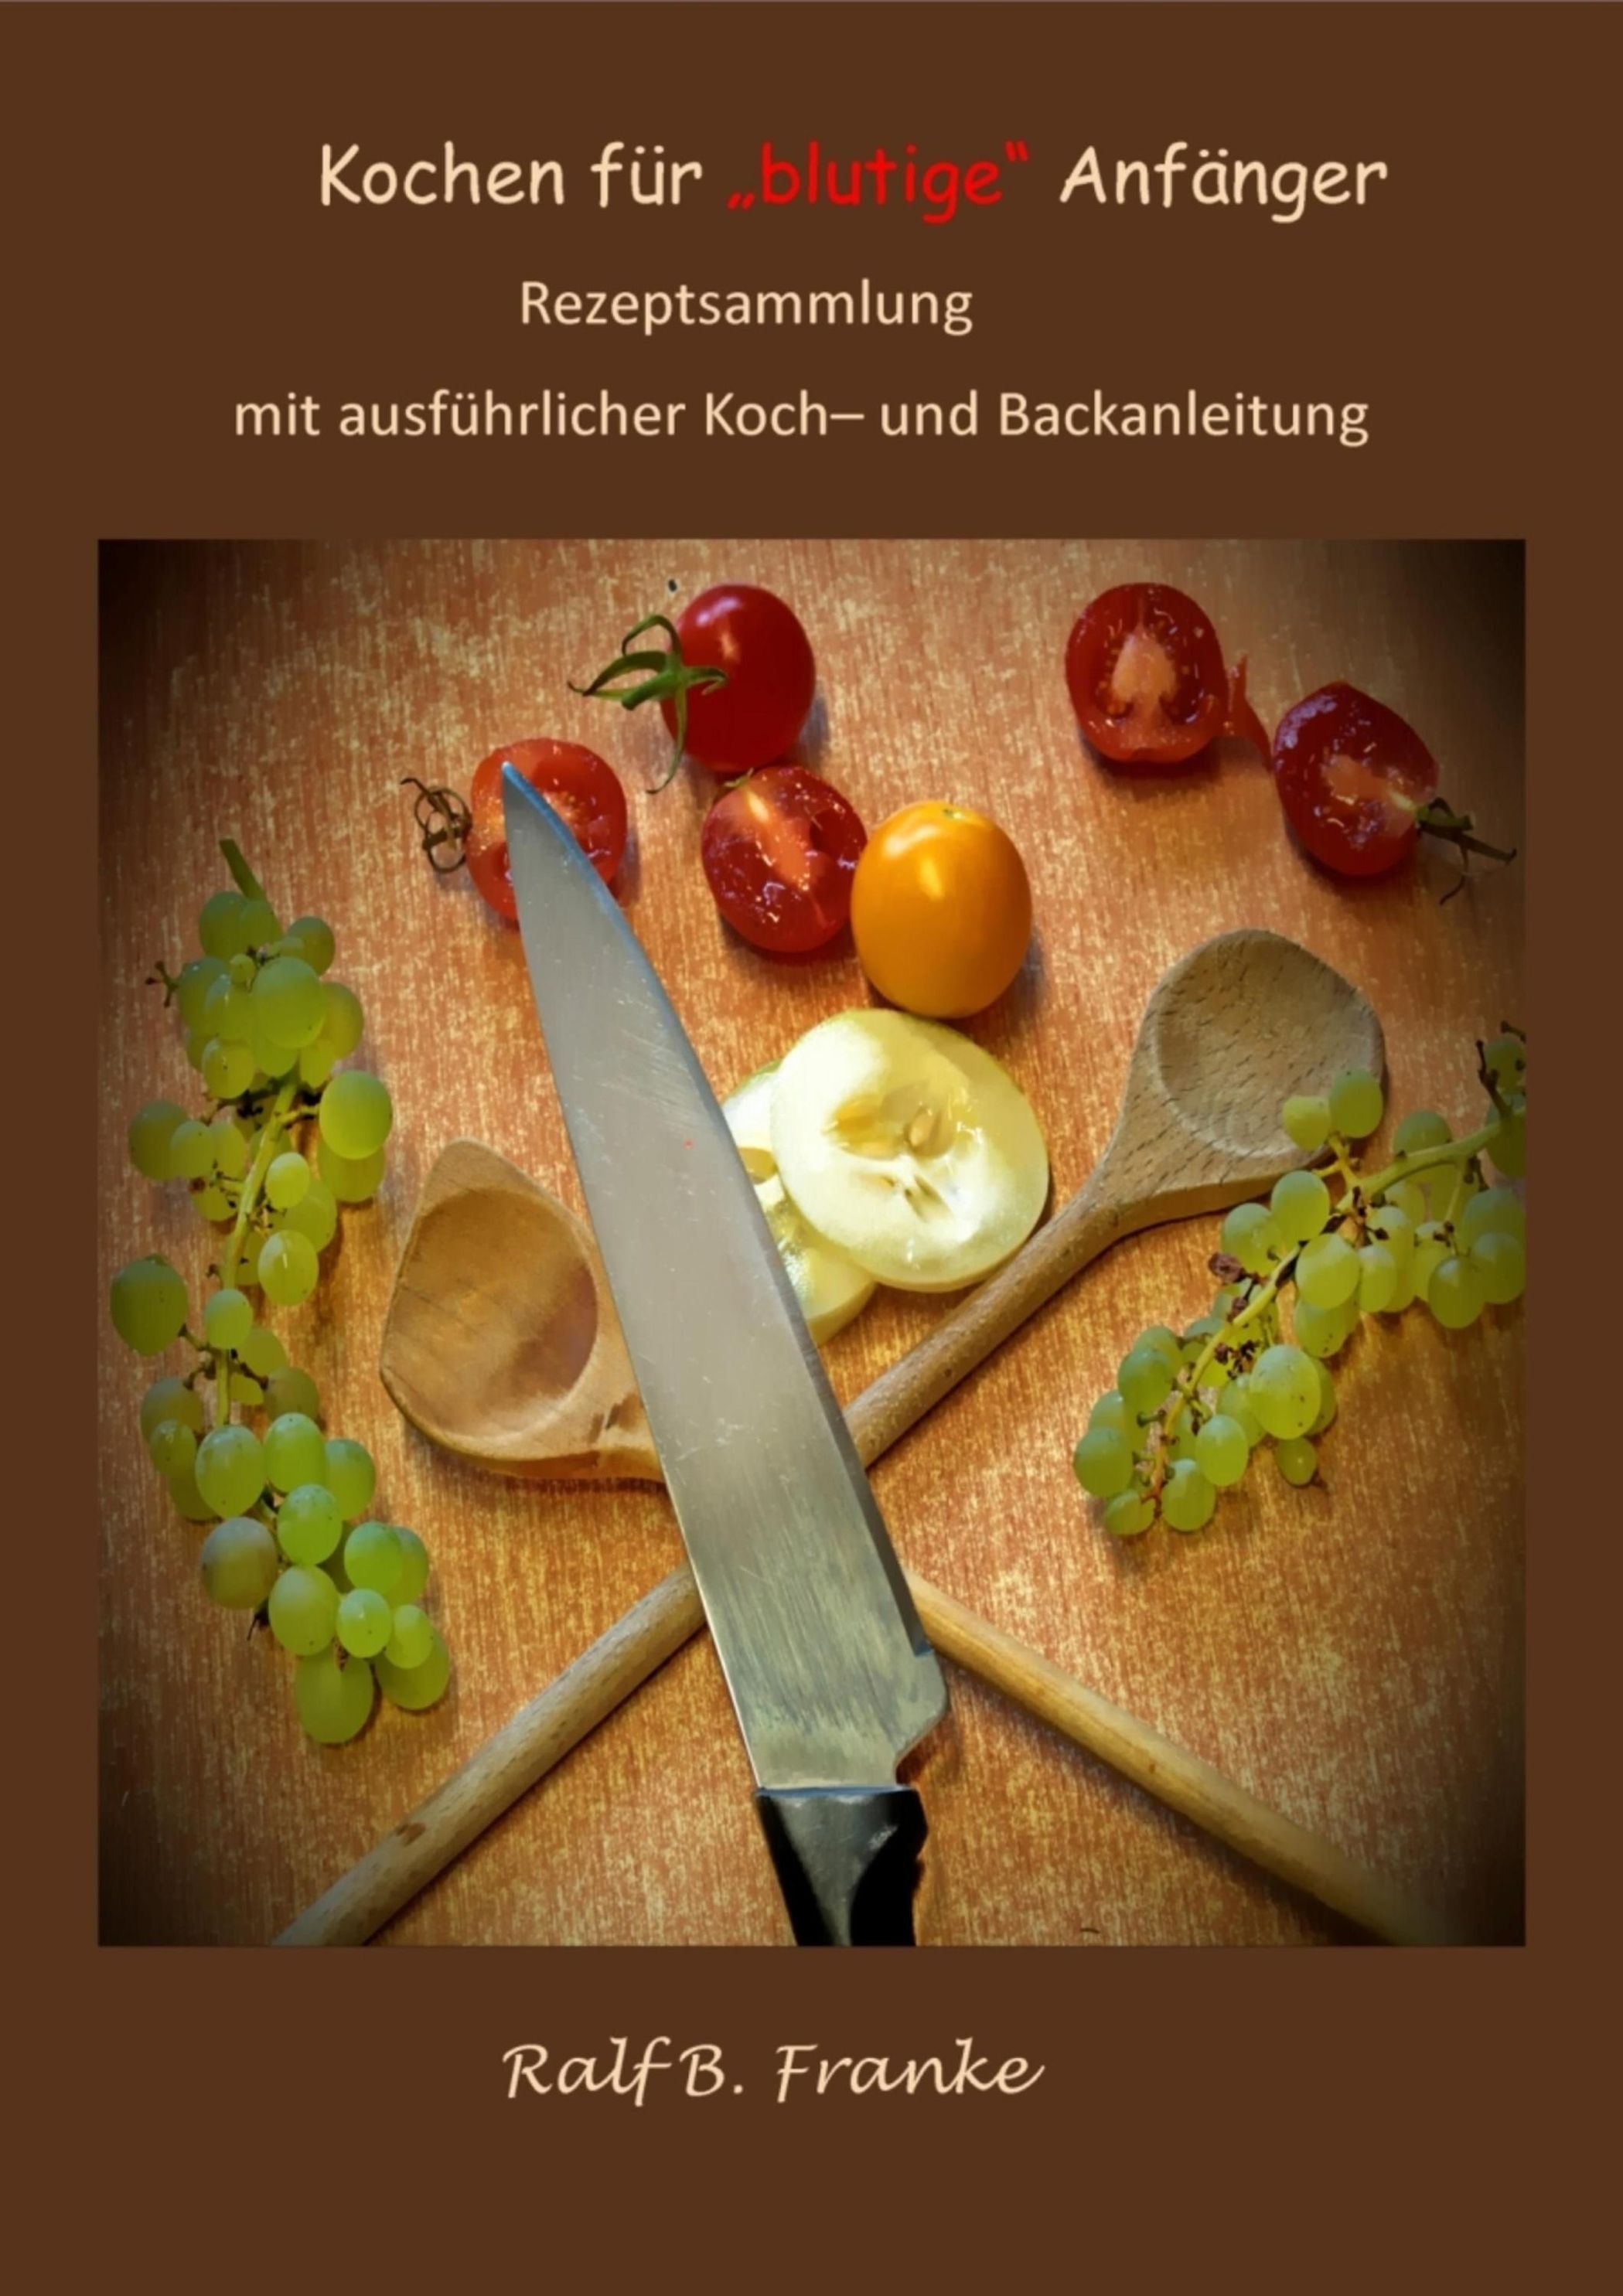 Kochen für blutige Anfänger: ebook jetzt bei Weltbild.de